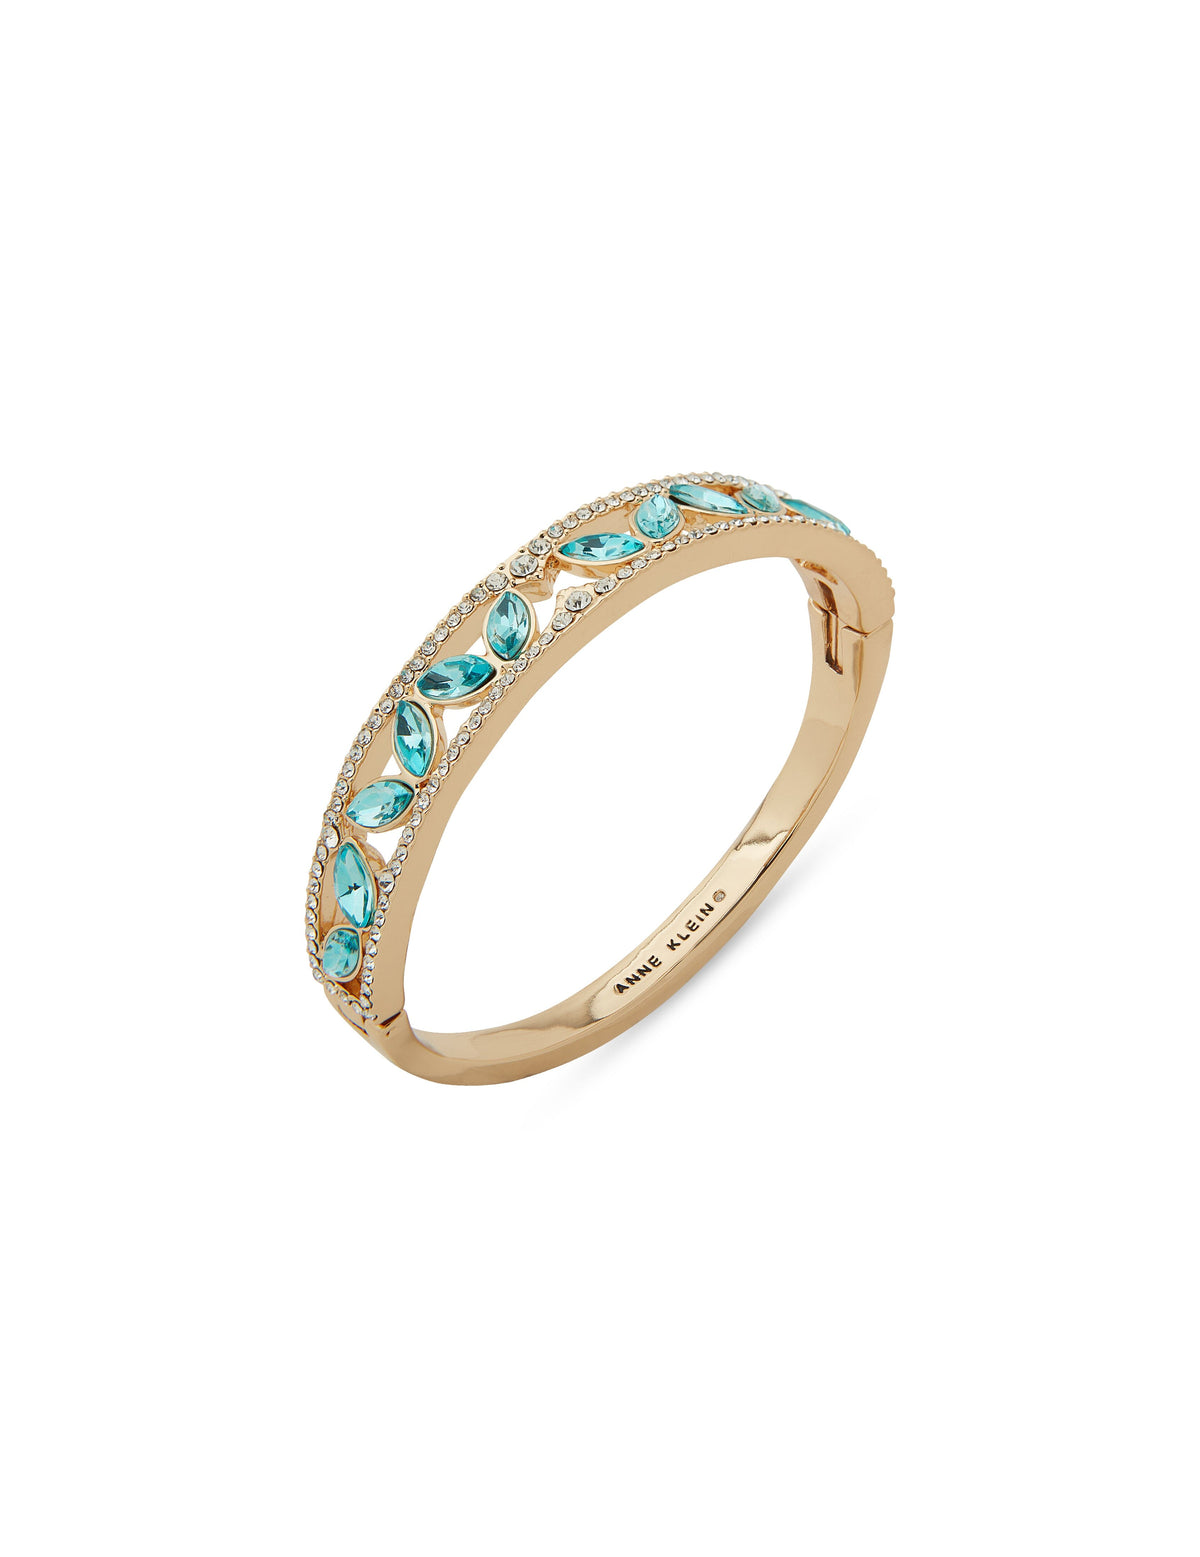 Anne Klein Gold Tone Turquoise Hinge Navette Bracelet in Gift Box